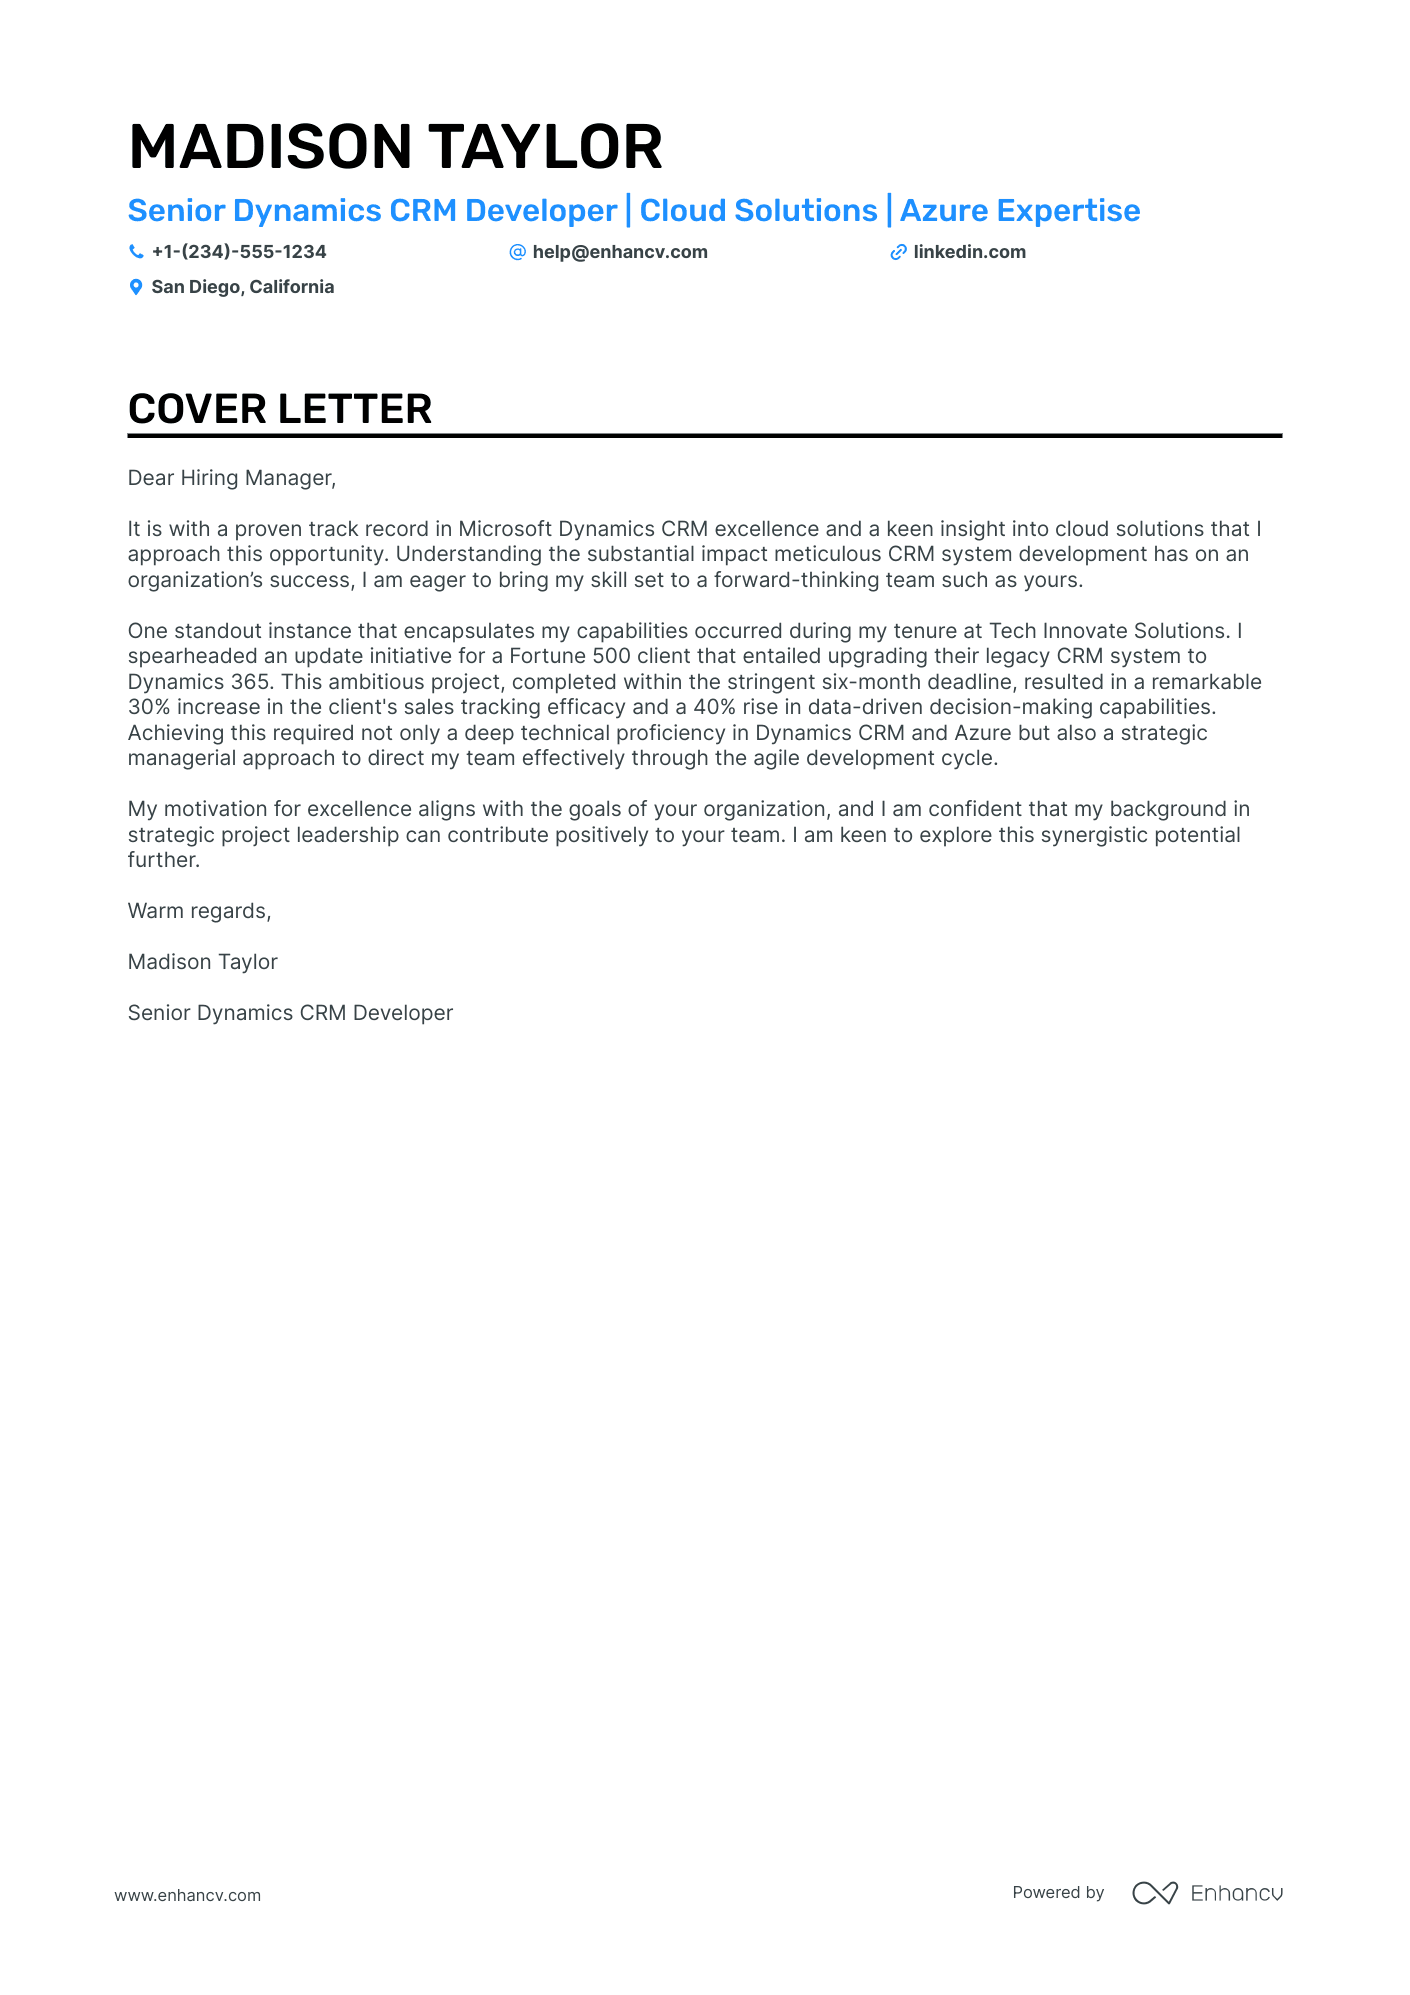 CRM Developer cover letter